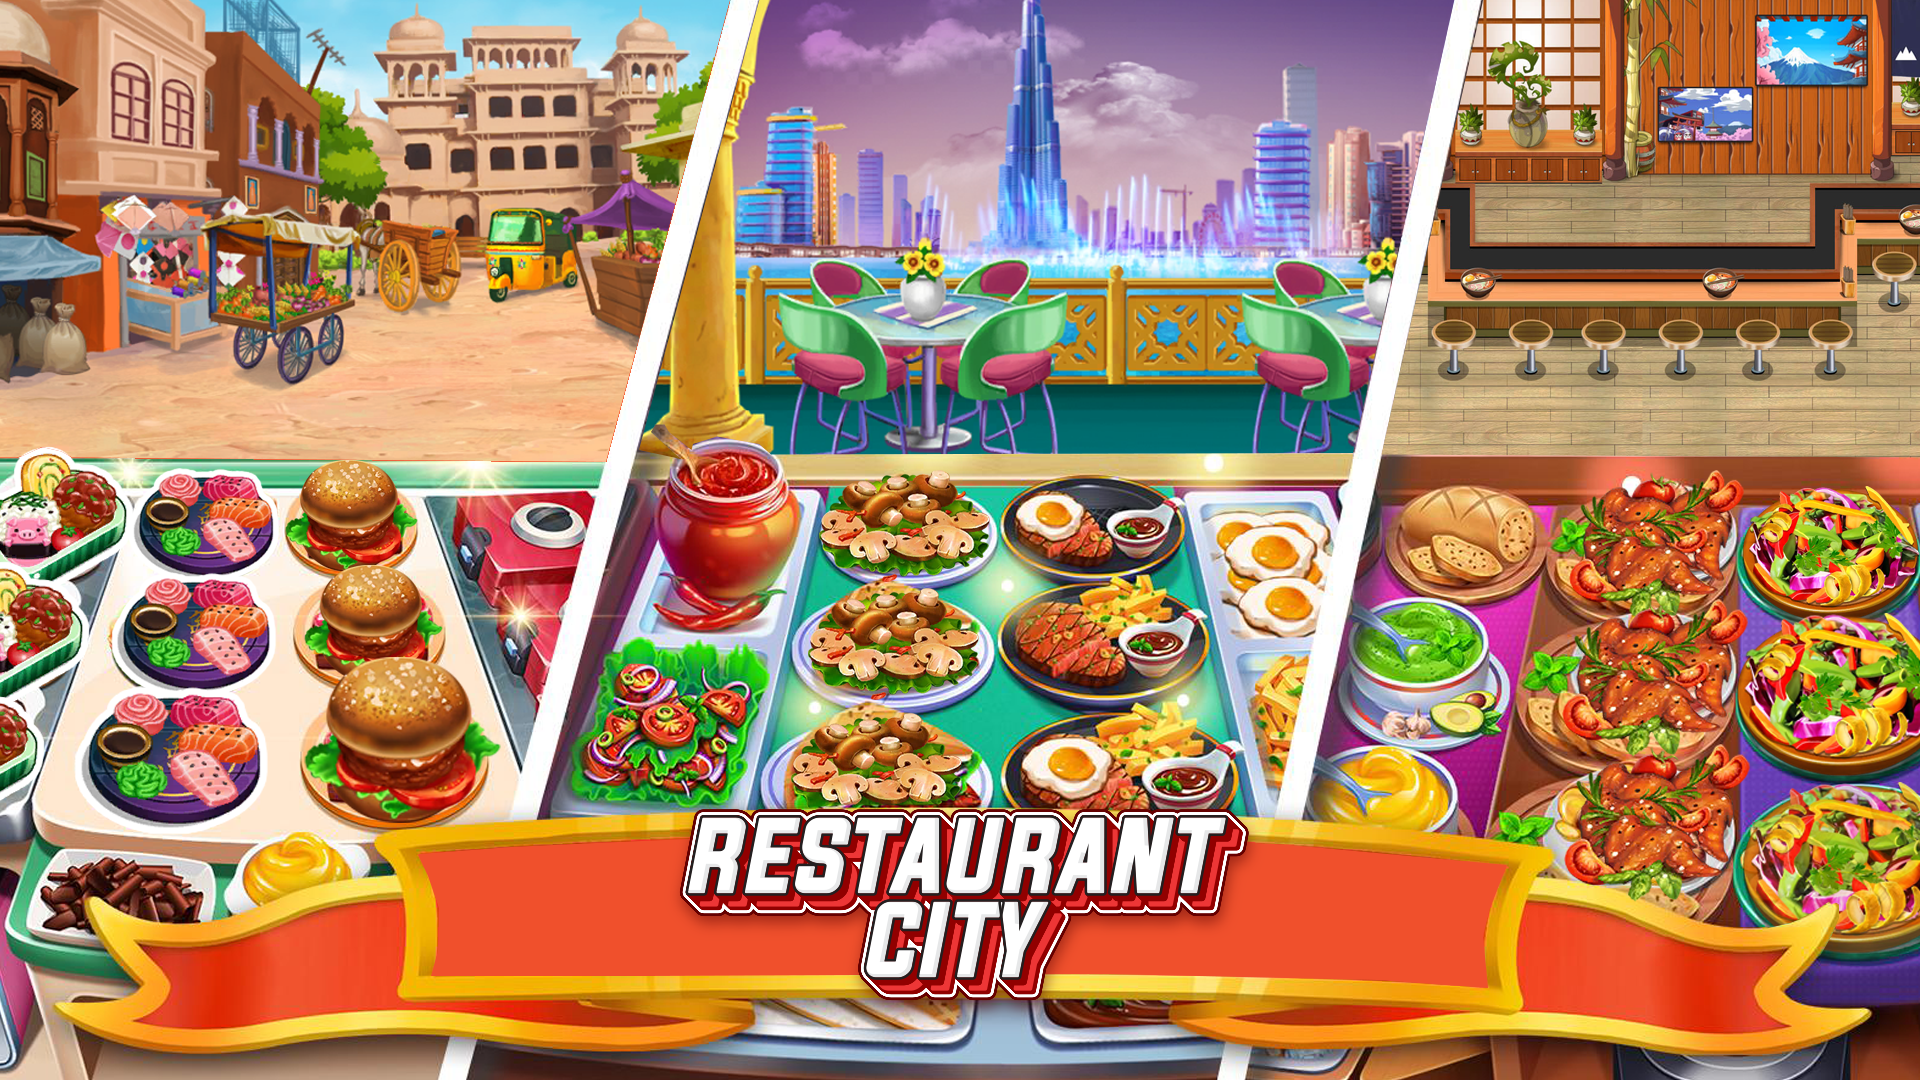 Screenshot 1 of Restaurant city: un nuevo juego de chef 1.0.1